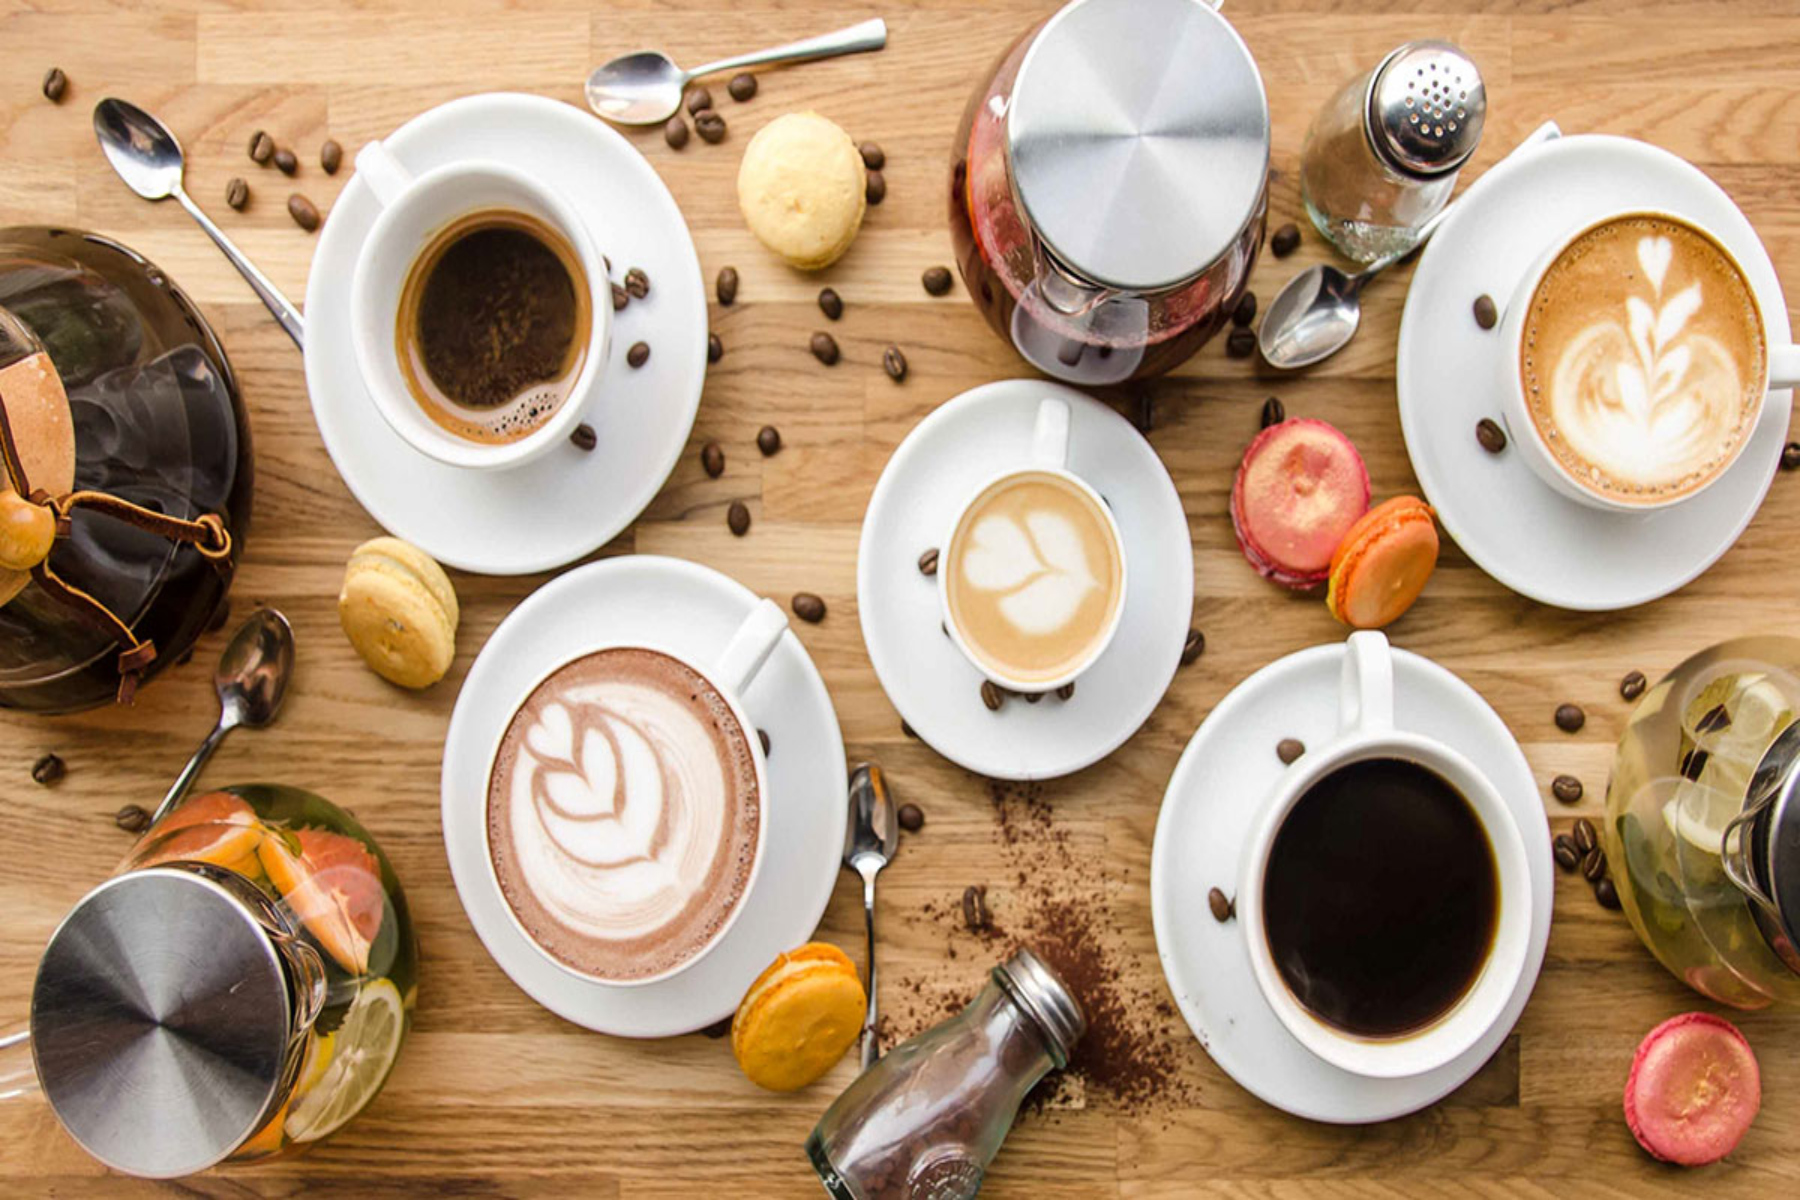 Καφεΐνη: 3 χρήσεις για το κατακάθι του καφέ στο σώμα μας